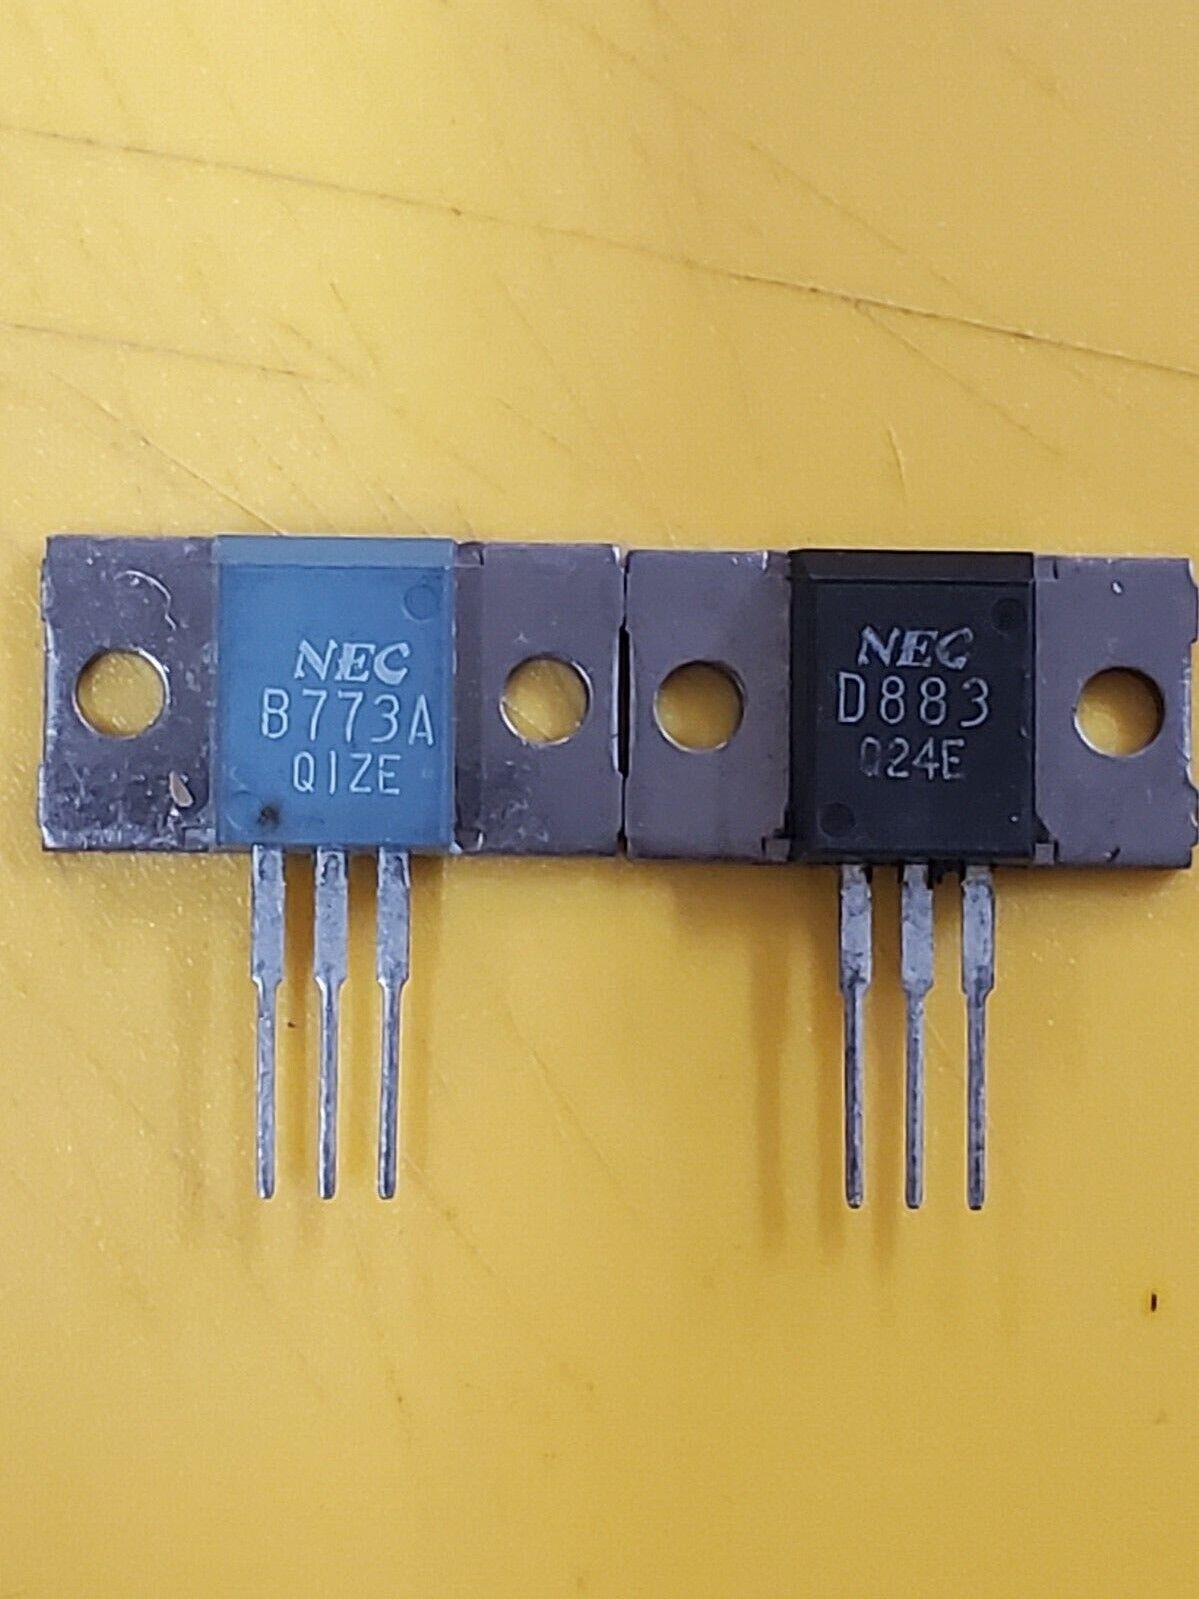 NEC 2SB773 & 2SD883, 2SB618R & 2SD588R (1 par choose) with ORA mixed